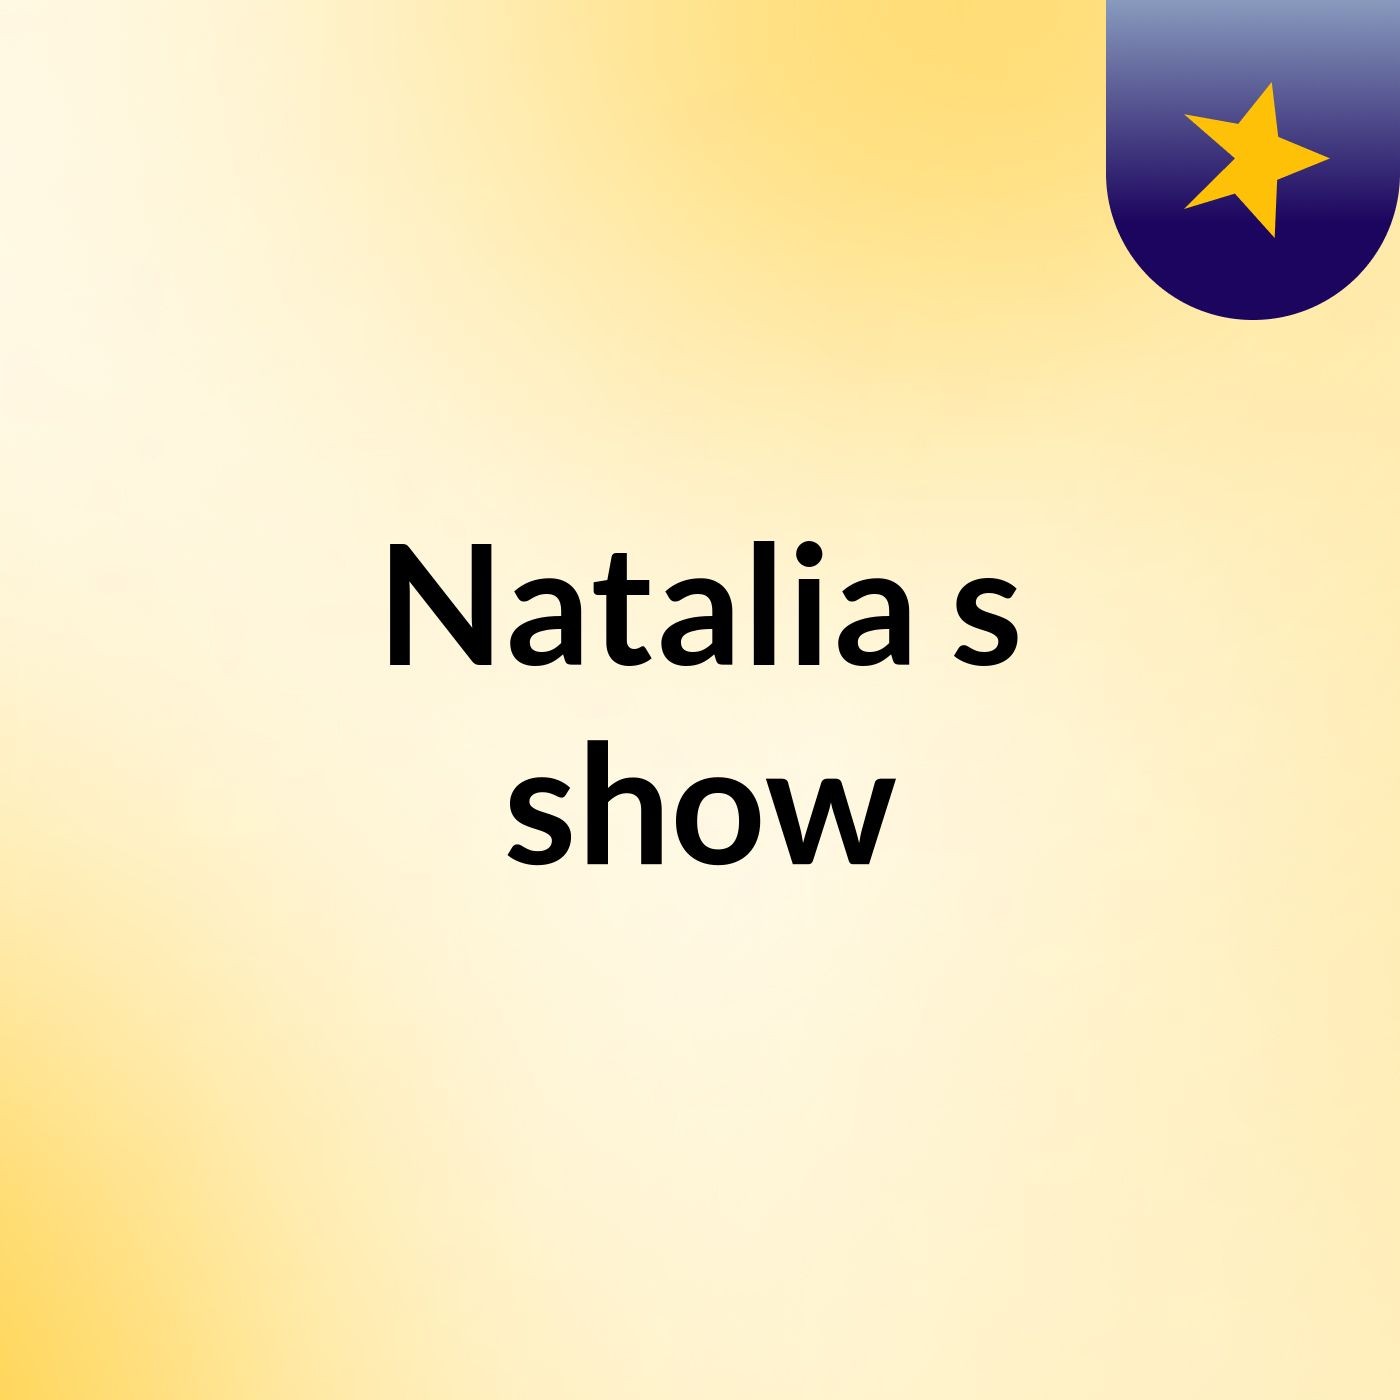 Natalia's show